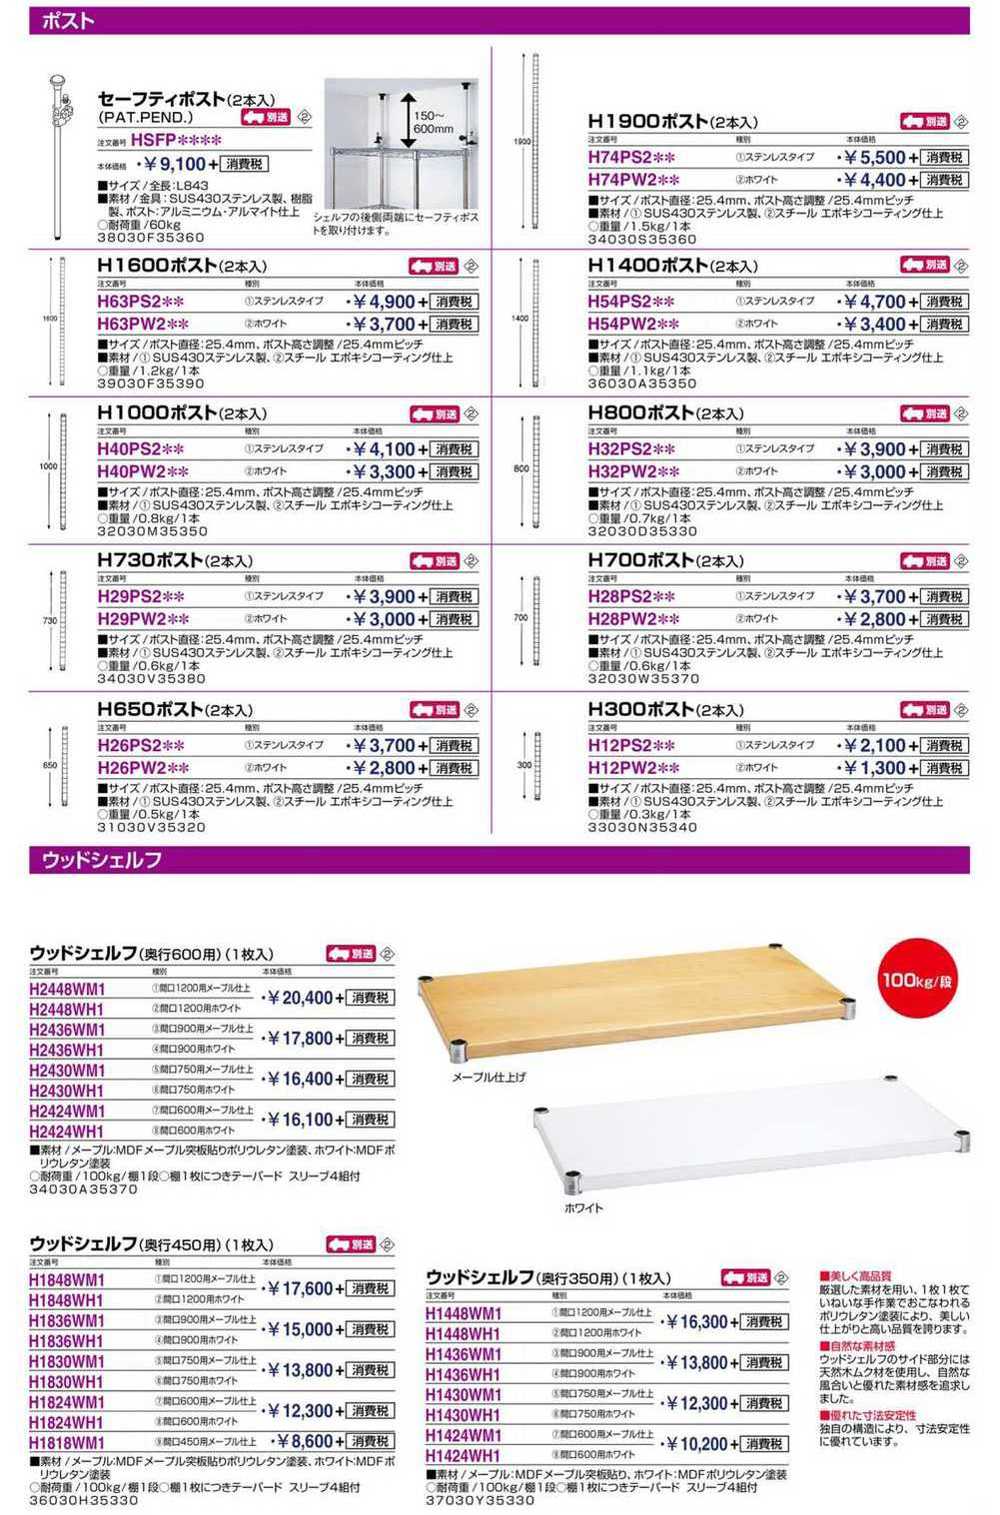 パンチングシェルフ W1200×D450 H1848PS1 | 激安特価販売 看板材料.COM